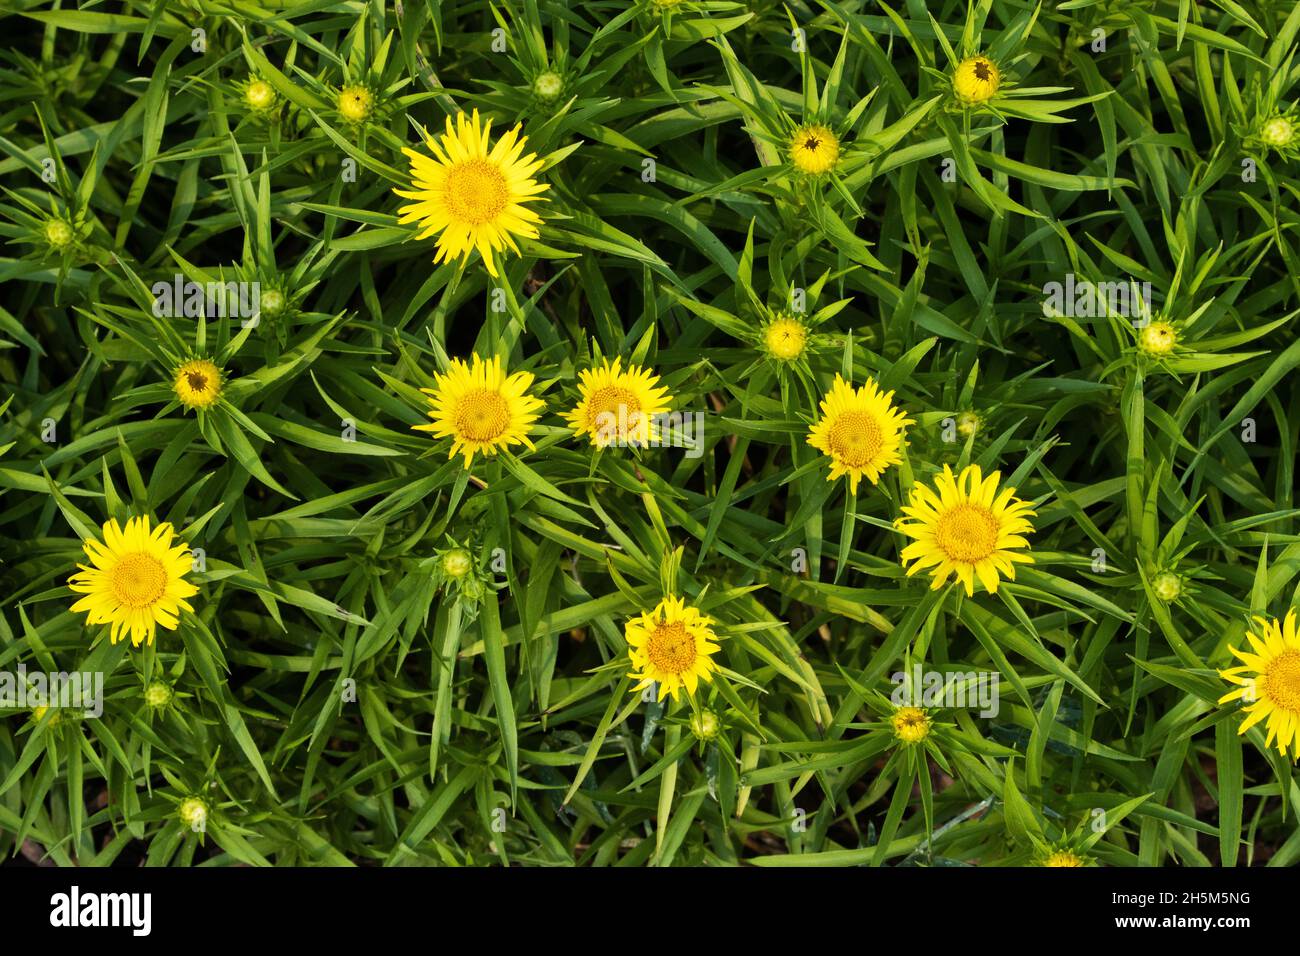 Un groupe d'asters dorés Dwarf fleuris qui poussent dans un jardin. Banque D'Images